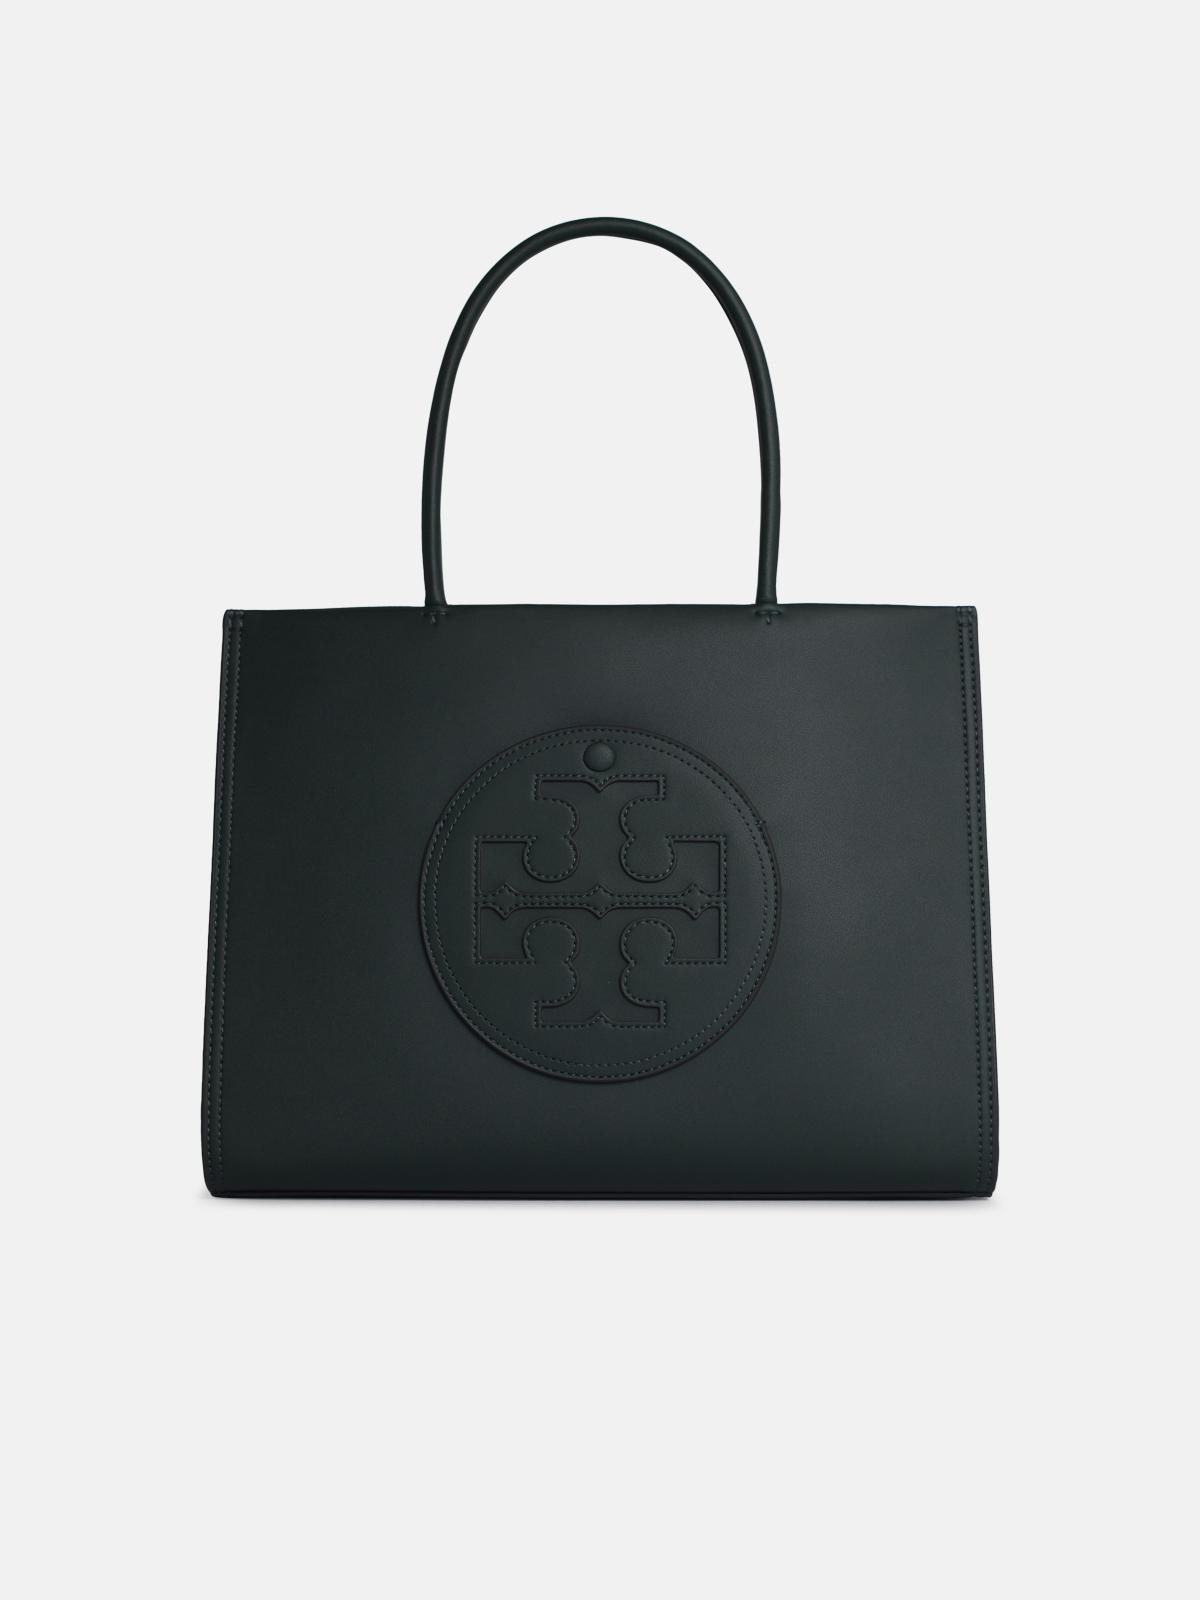 Tory Burch 'ella' Shopping Bag In Green Bio-tex Leather